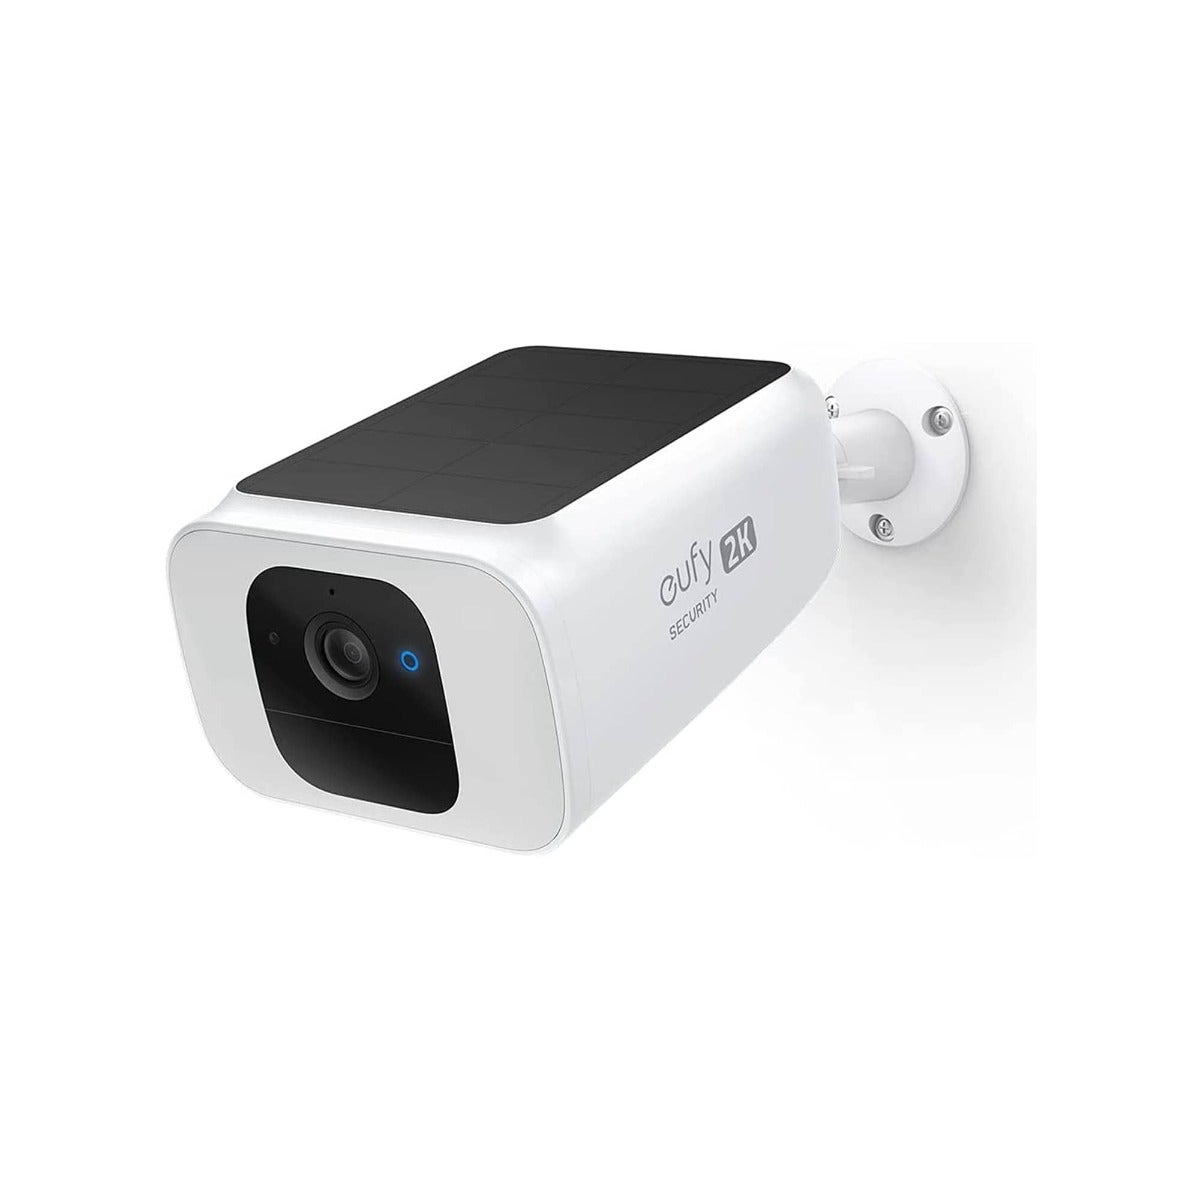 La nueva cámara de vigilancia de Eufy tiene sirena y una batería de cuatro  meses